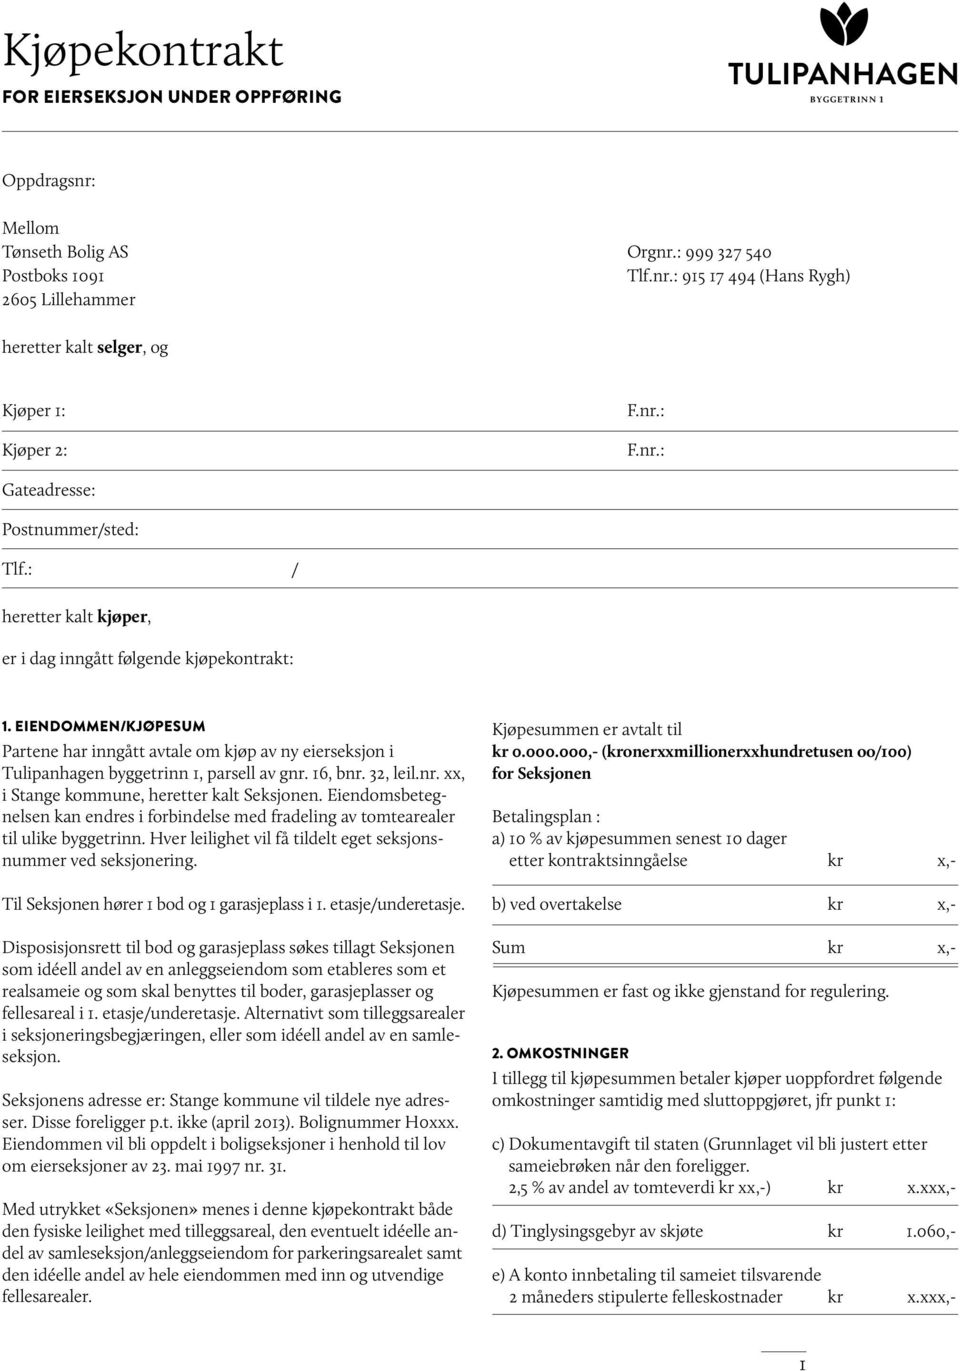 EIENDOMMEN/KJØPESUM Partene har inngått avtale om kjøp av ny eierseksjon i Tulipanhagen byggetrinn 1, parsell av gnr. 16, bnr. 32, leil.nr. xx, i Stange kommune, heretter kalt Seksjonen.